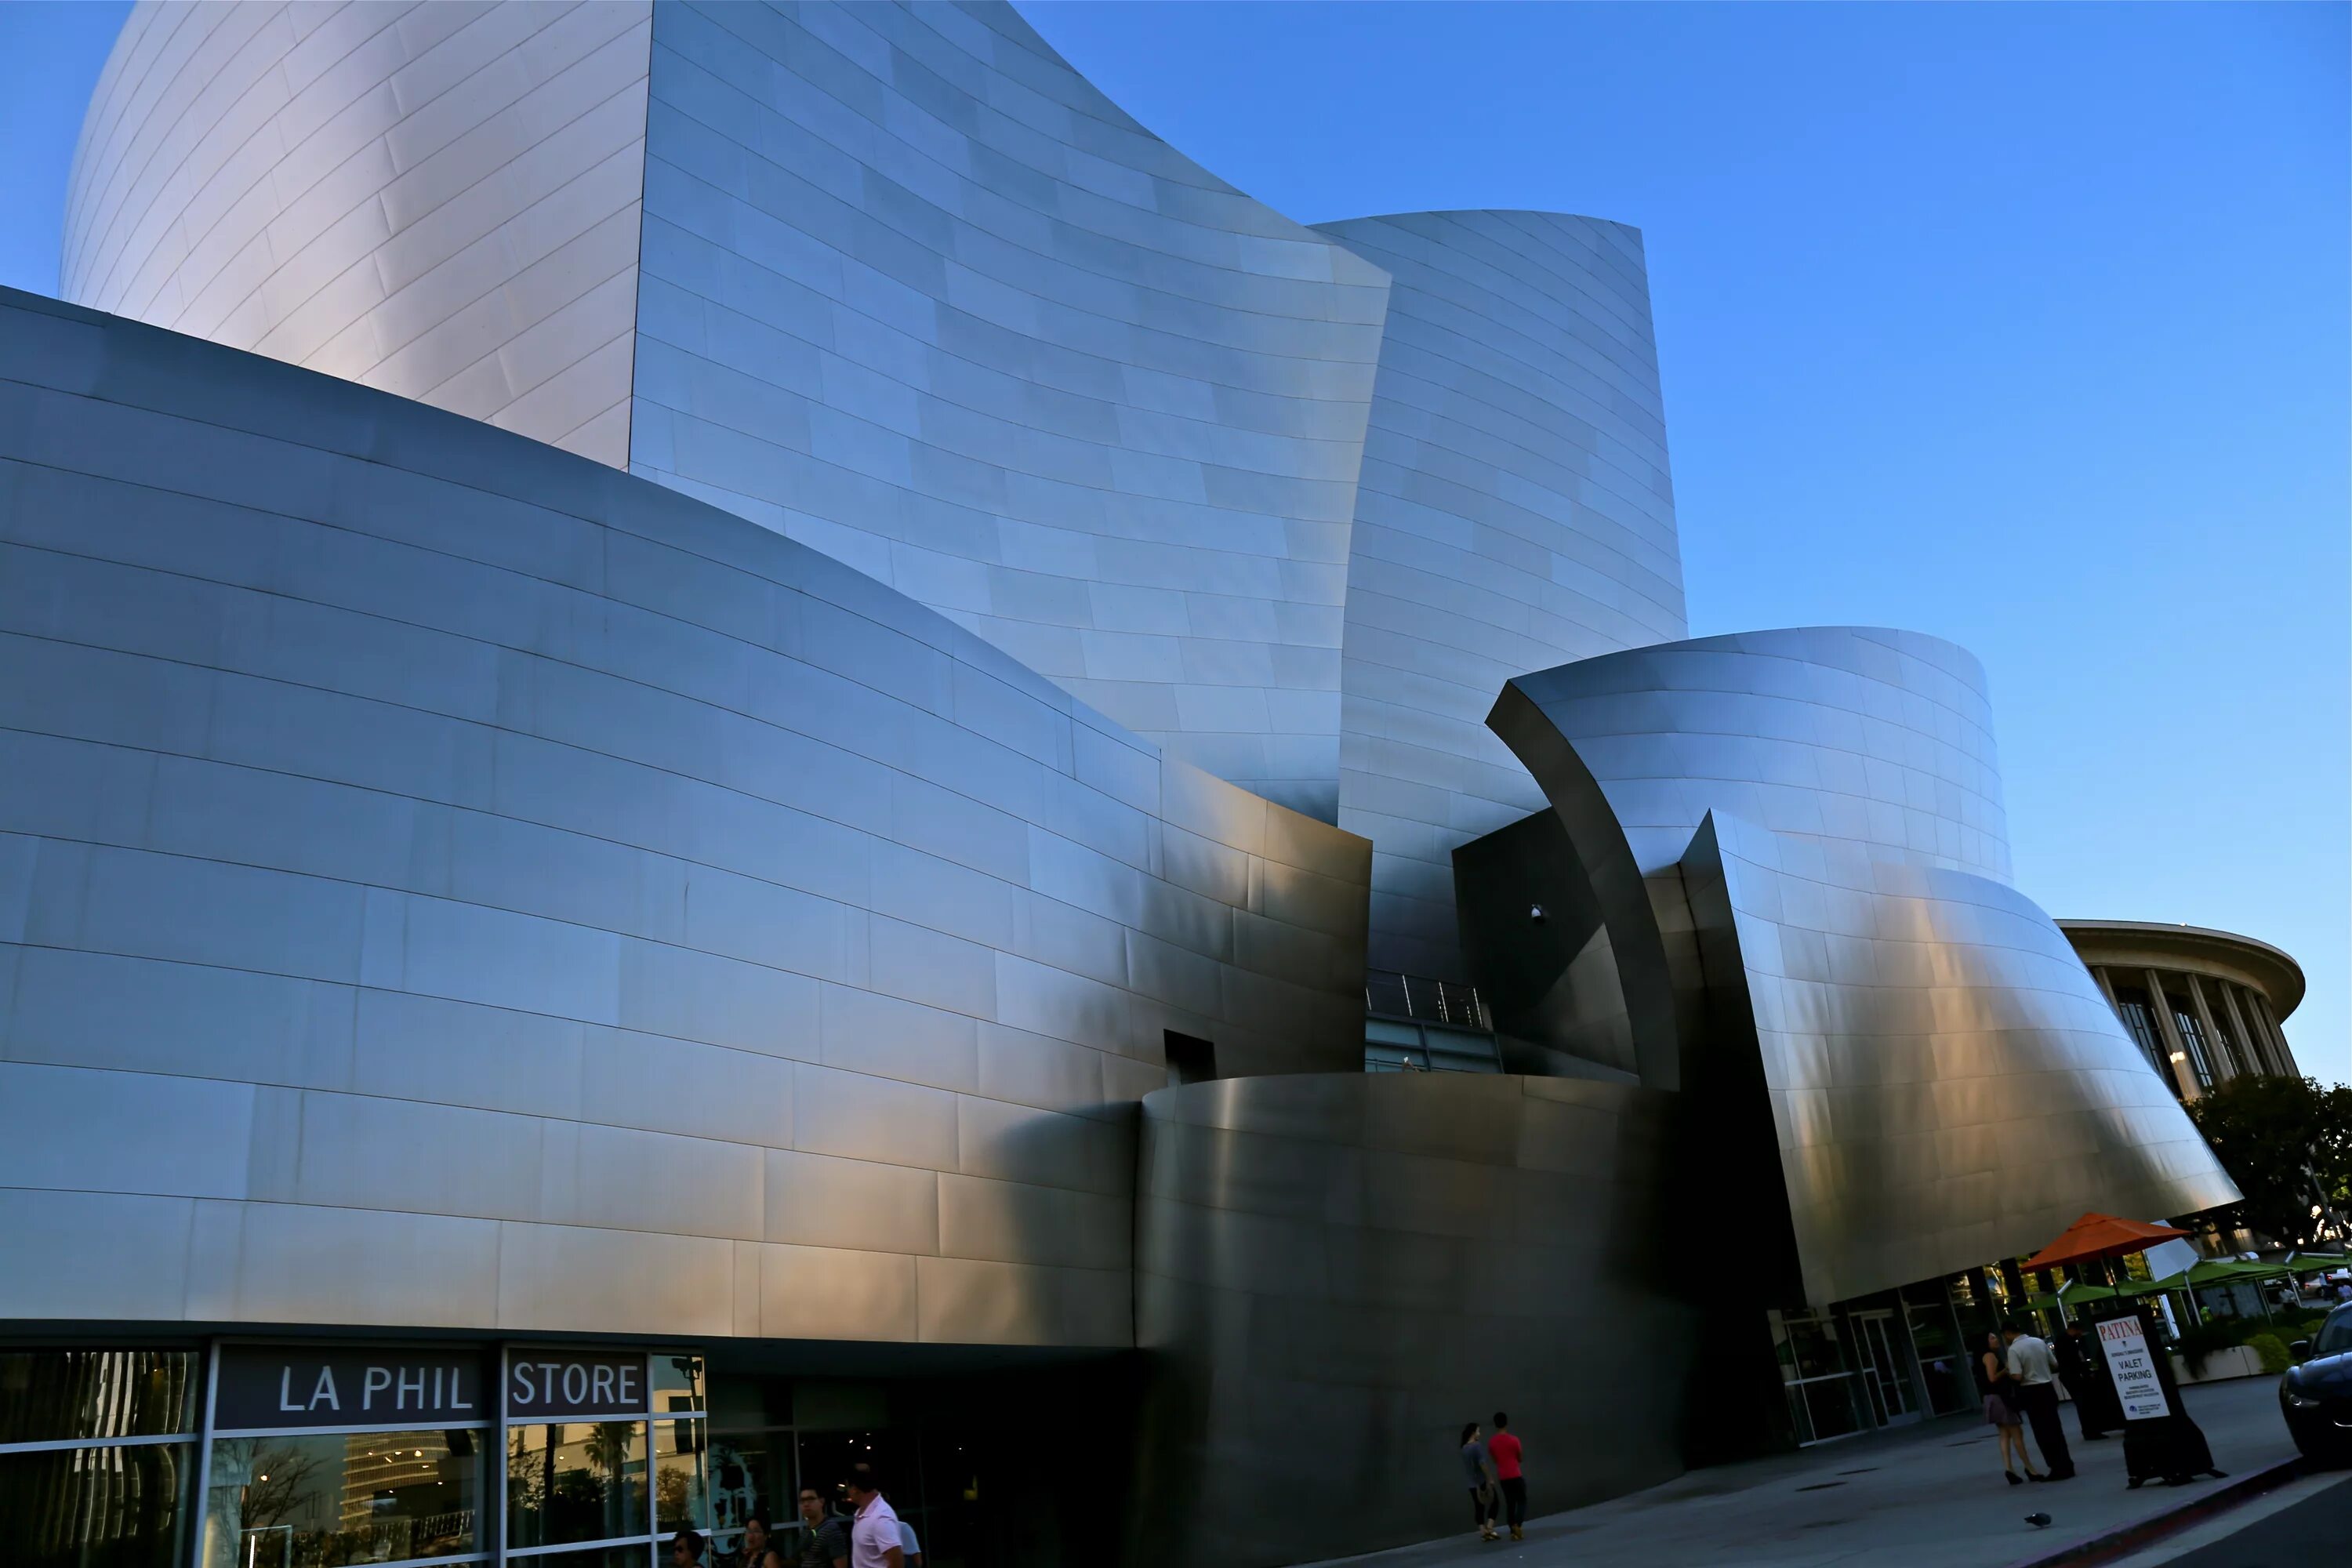 Концертный зал имени Уолта Диснея Фрэнк Гери. Концертный зал имени Уолта Диснея Лос-Анджелес. Концертный зал Уолта Диснея в Лос-Анджелесе план. Концертный зал имени Уолта Диснея ландшафт.